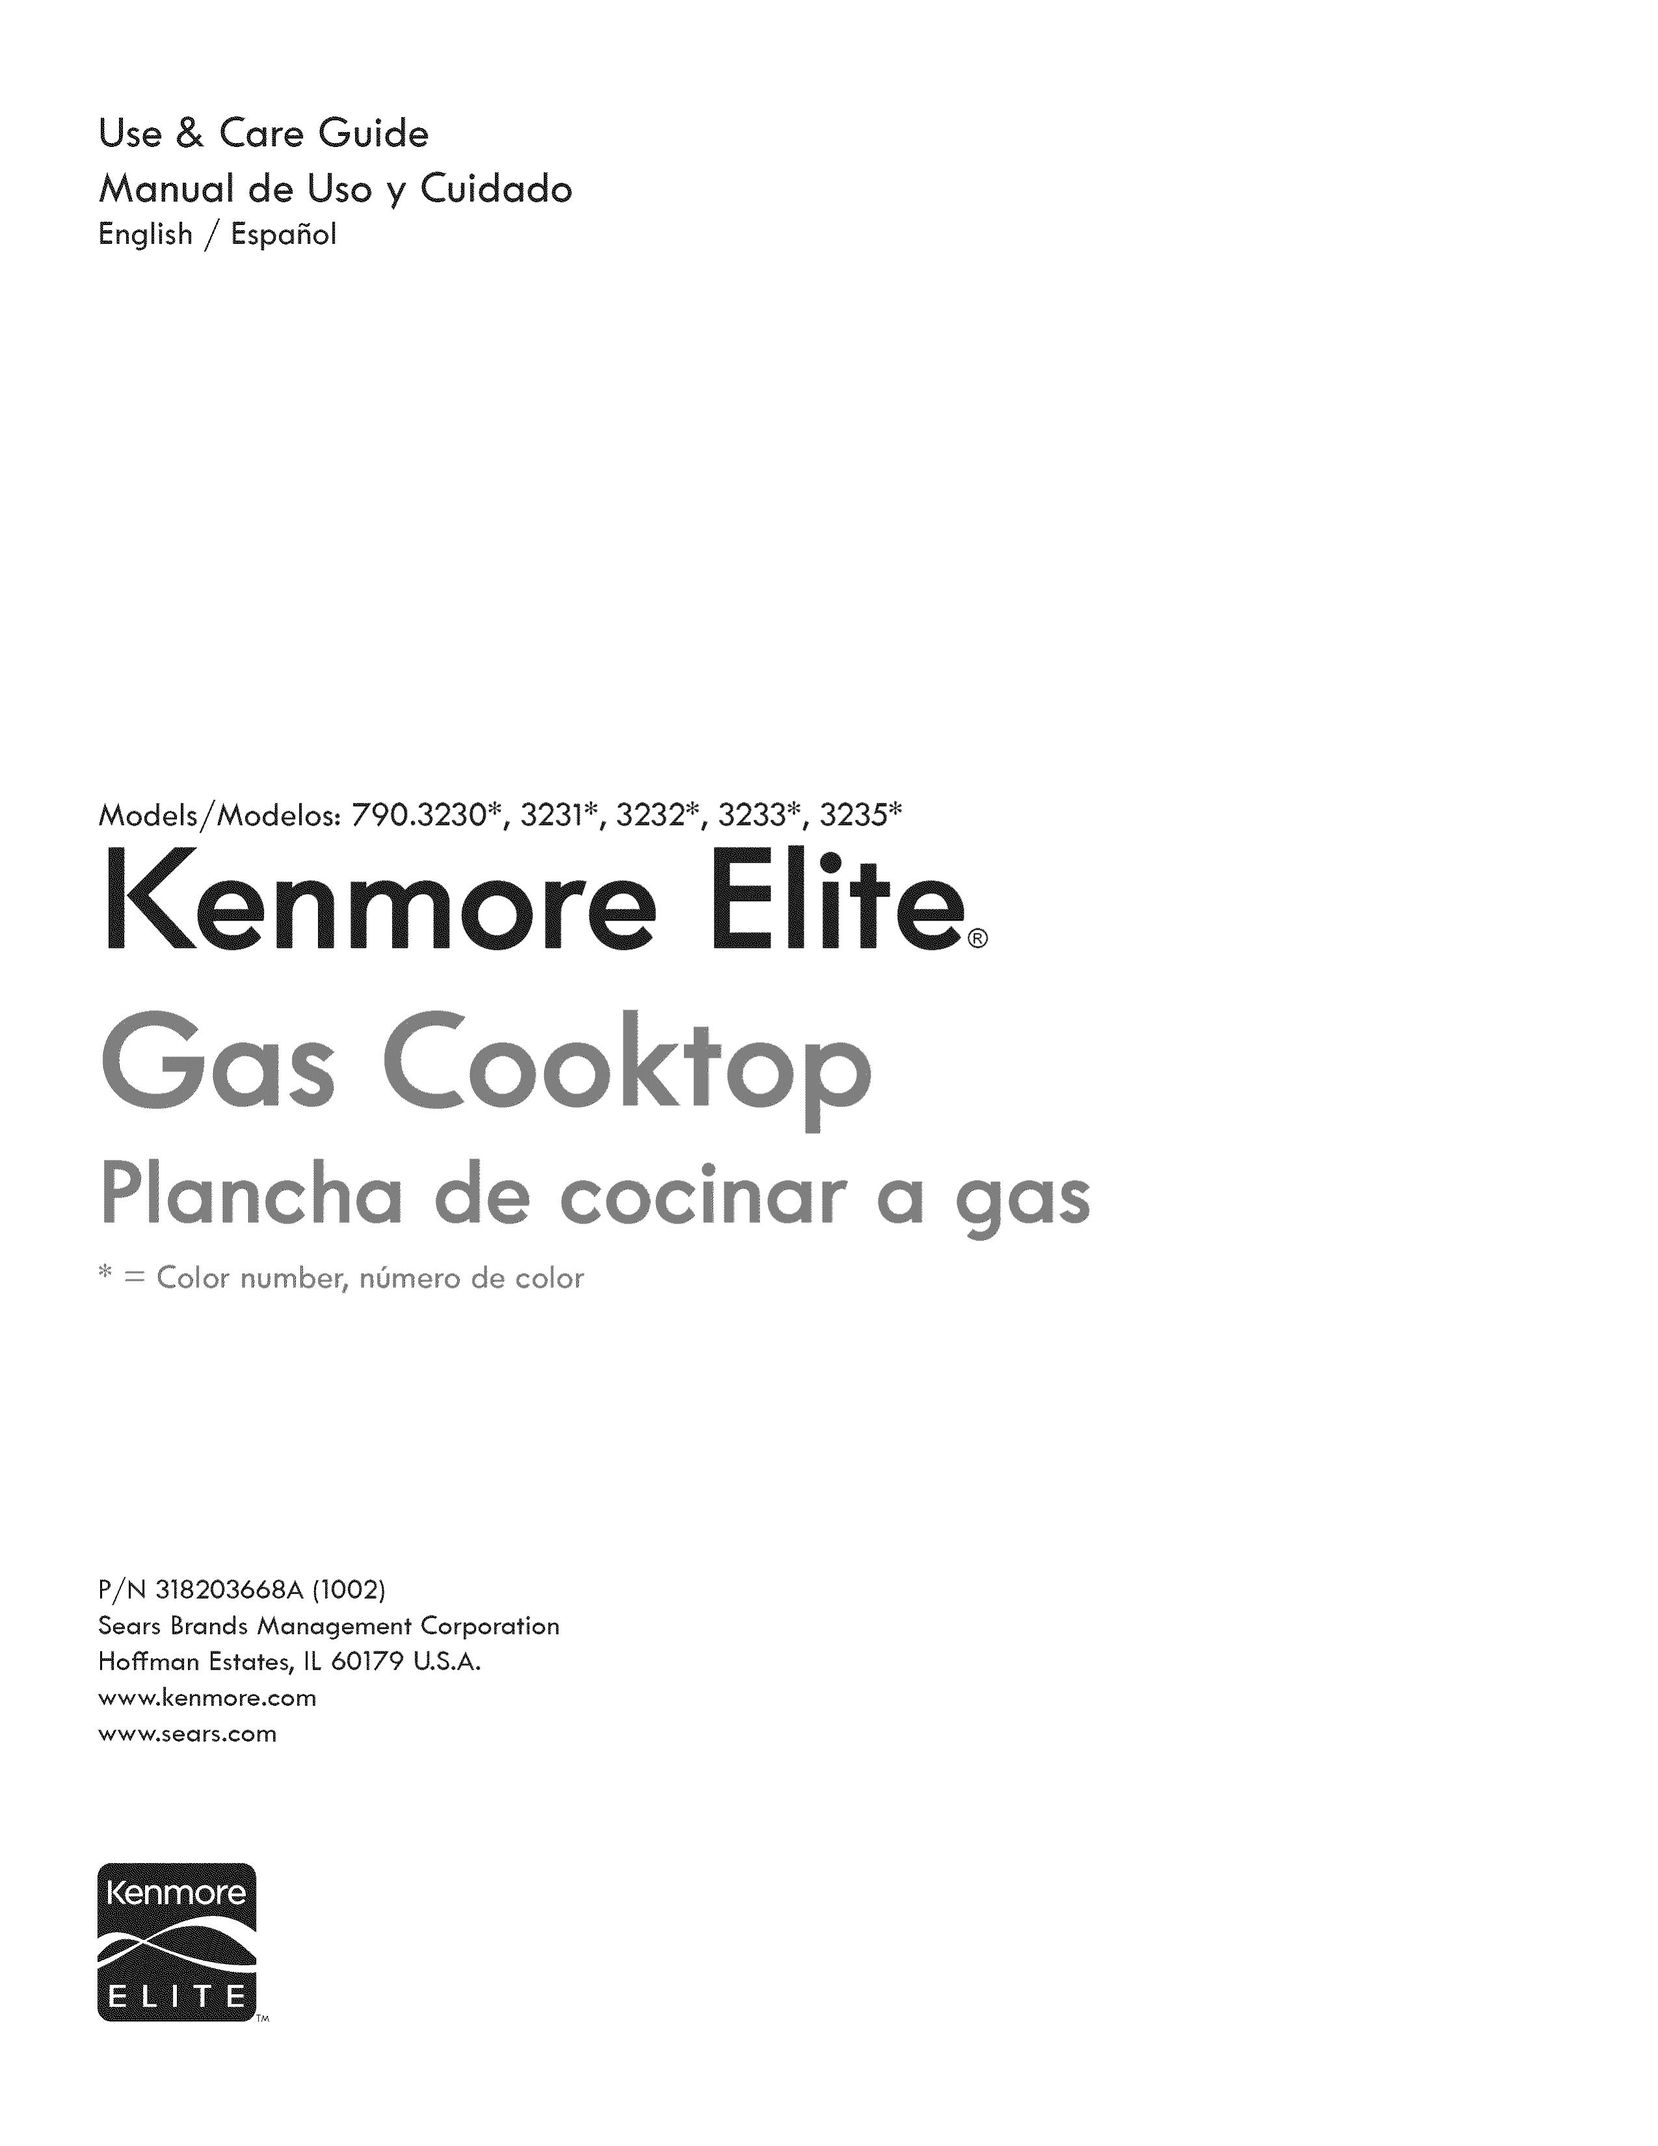 Kenmore 3231 Cooktop User Manual